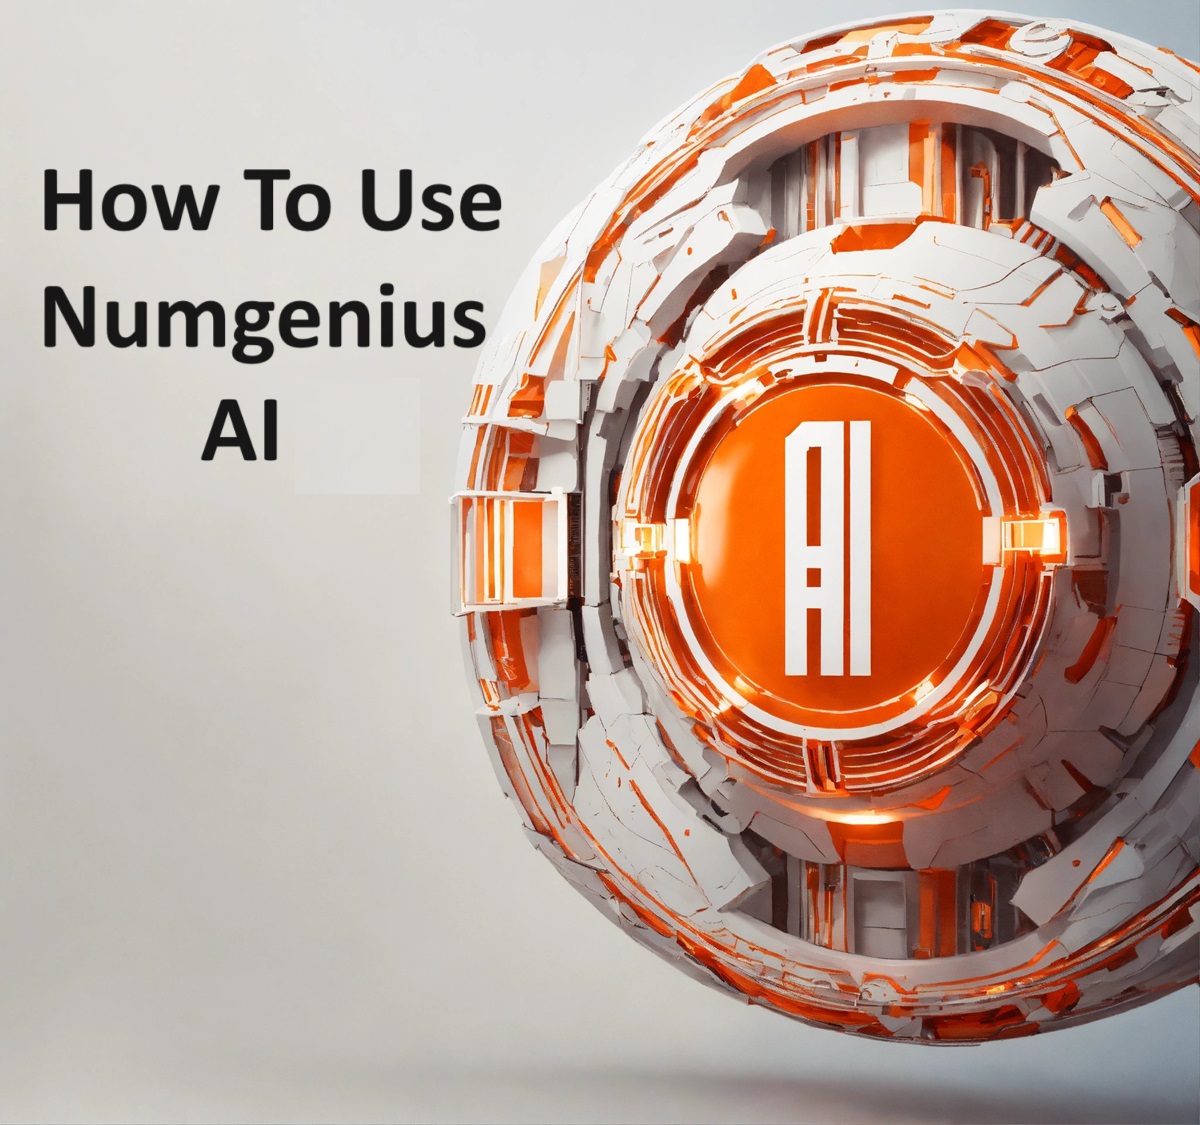 Numgenius AI